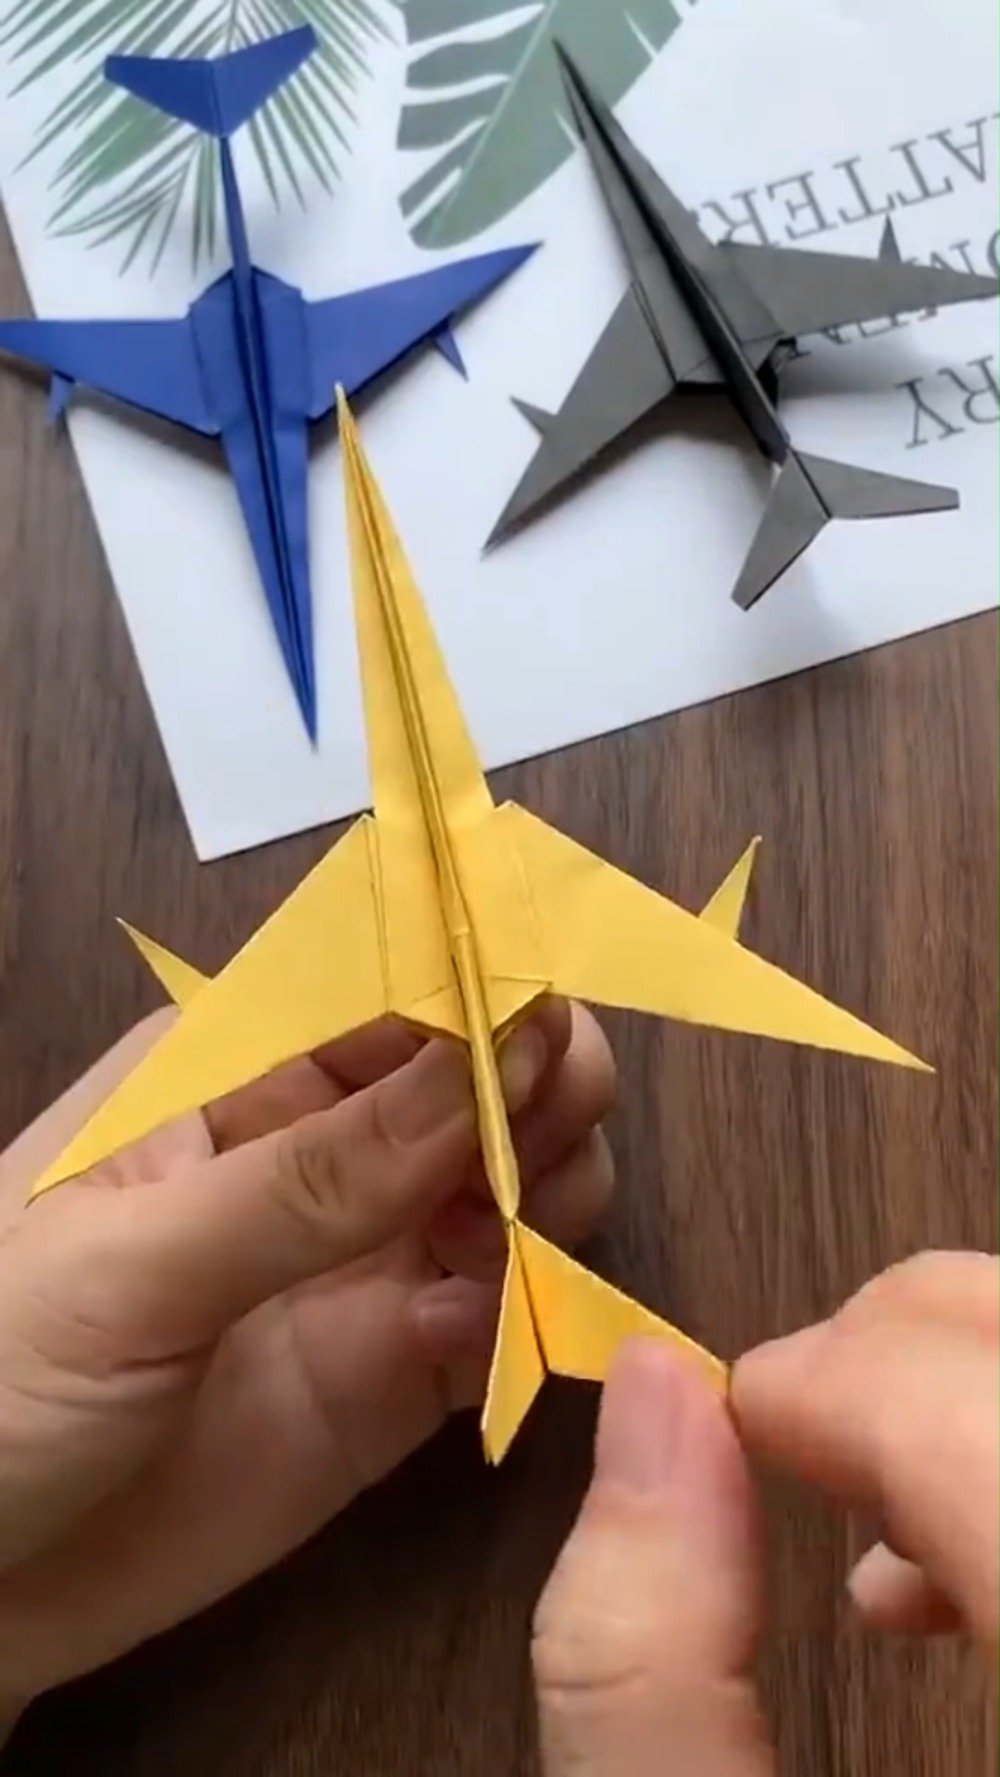 「儿童创意手工」颜值超高的纸飞机折法,赶紧给孩子安排!